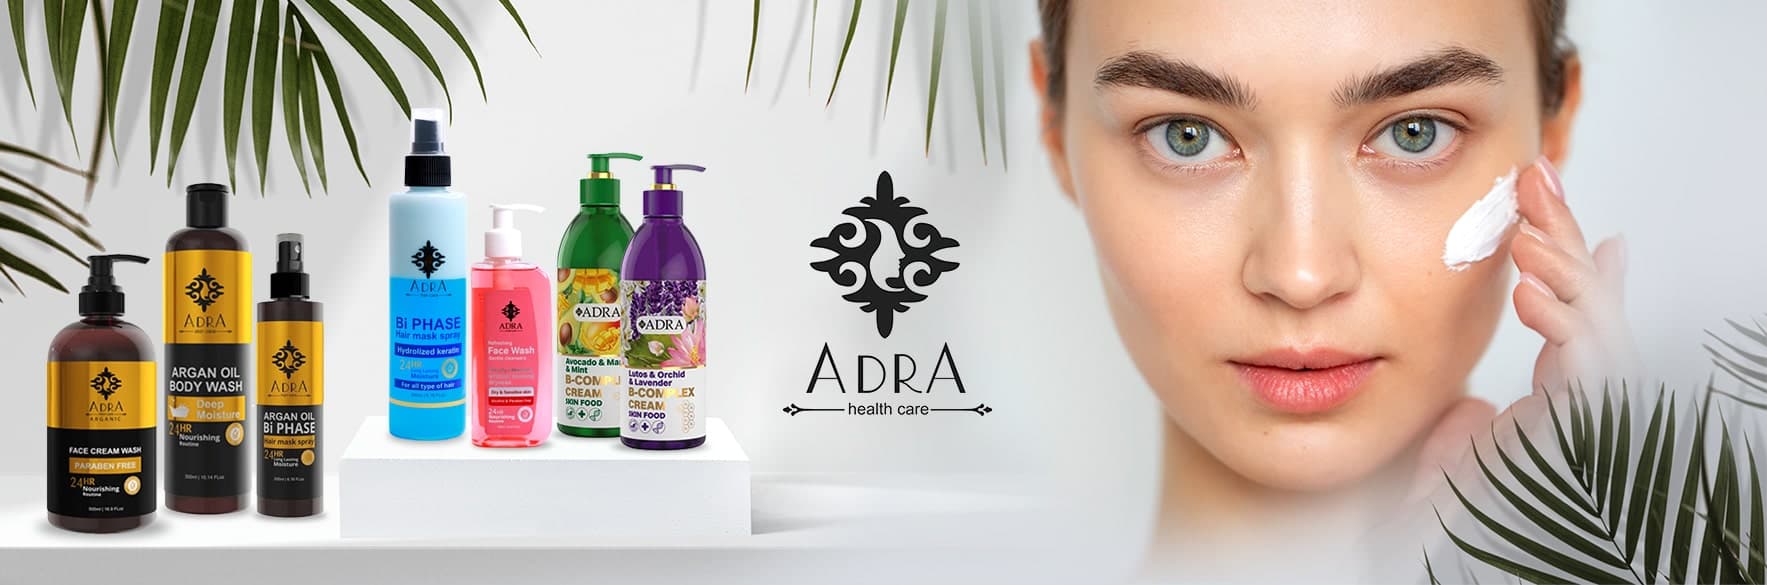 آدرا ADRA انواع محصولات پوستی، مو و بهداشتی